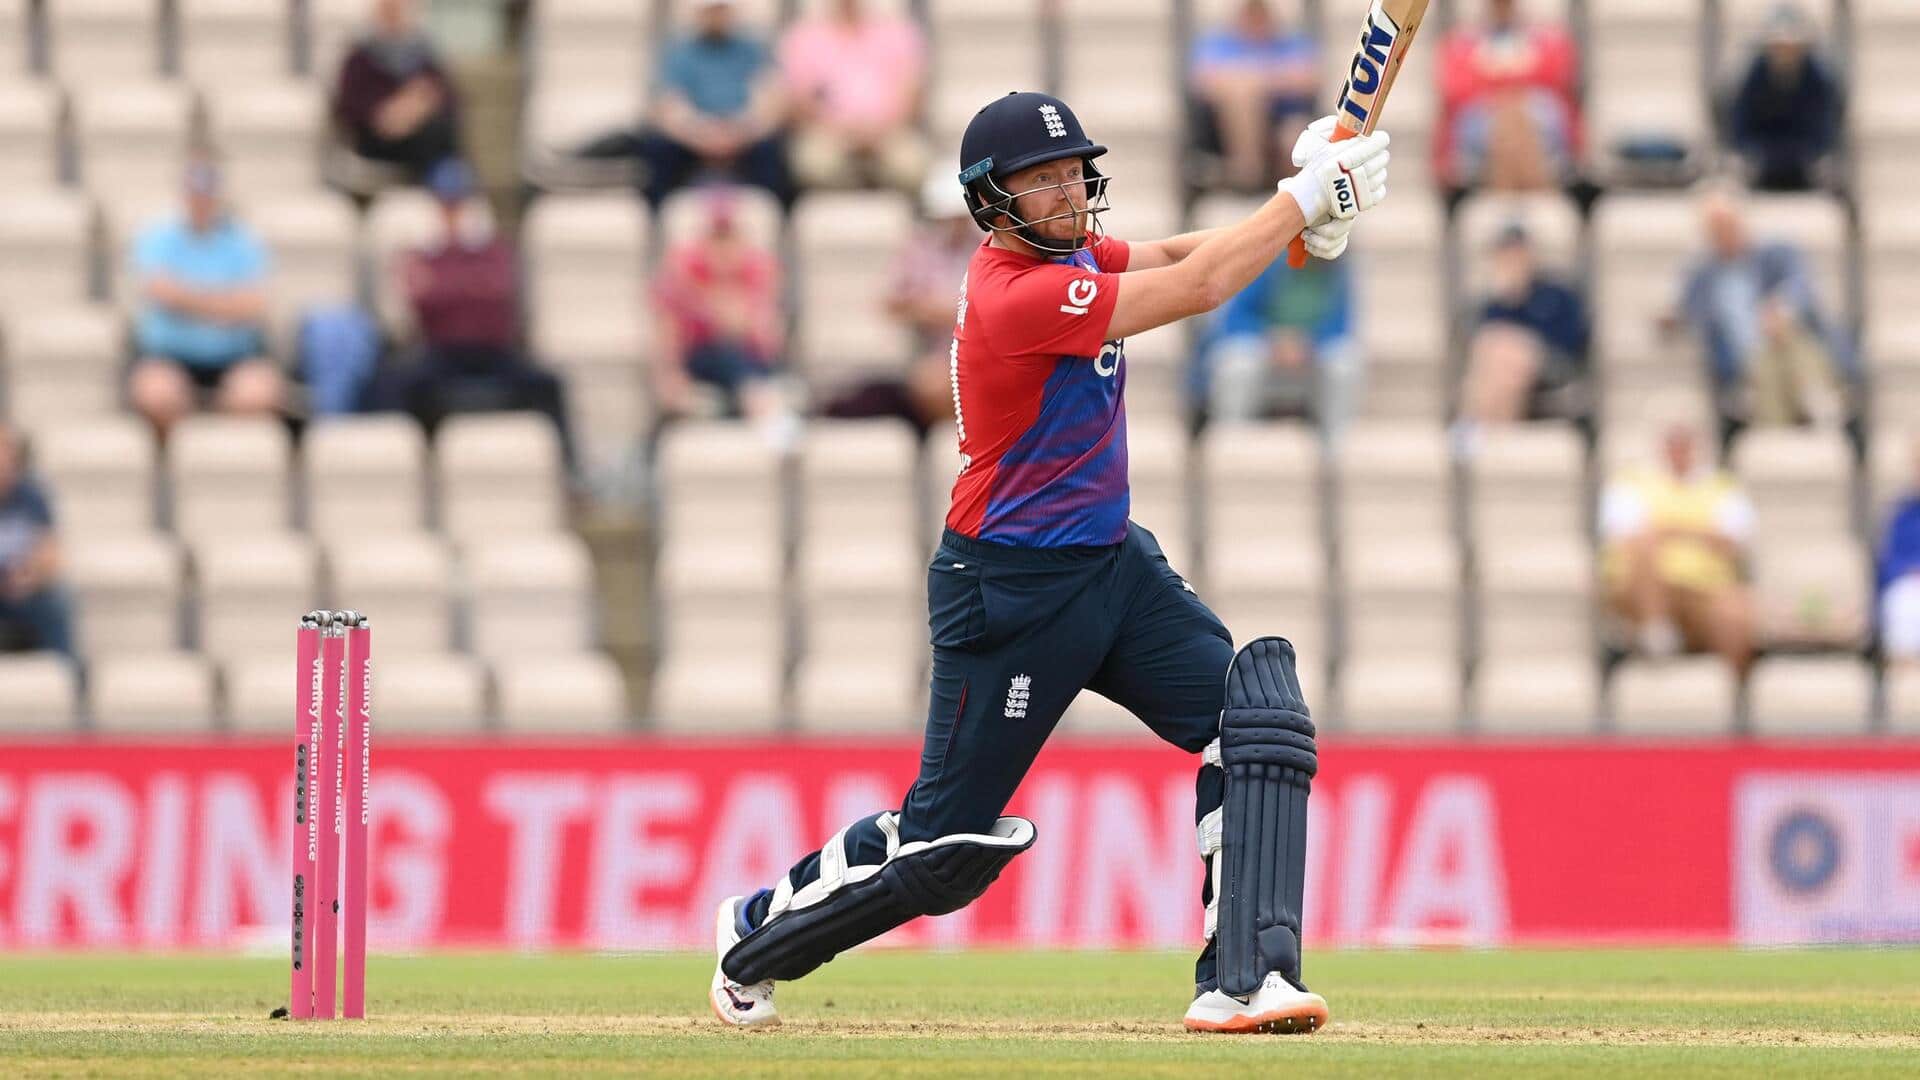 जॉनी बेयरस्टो ने इंग्लैंड के लिए खेले 100 वनडे, जानिए उनके आंकड़े 